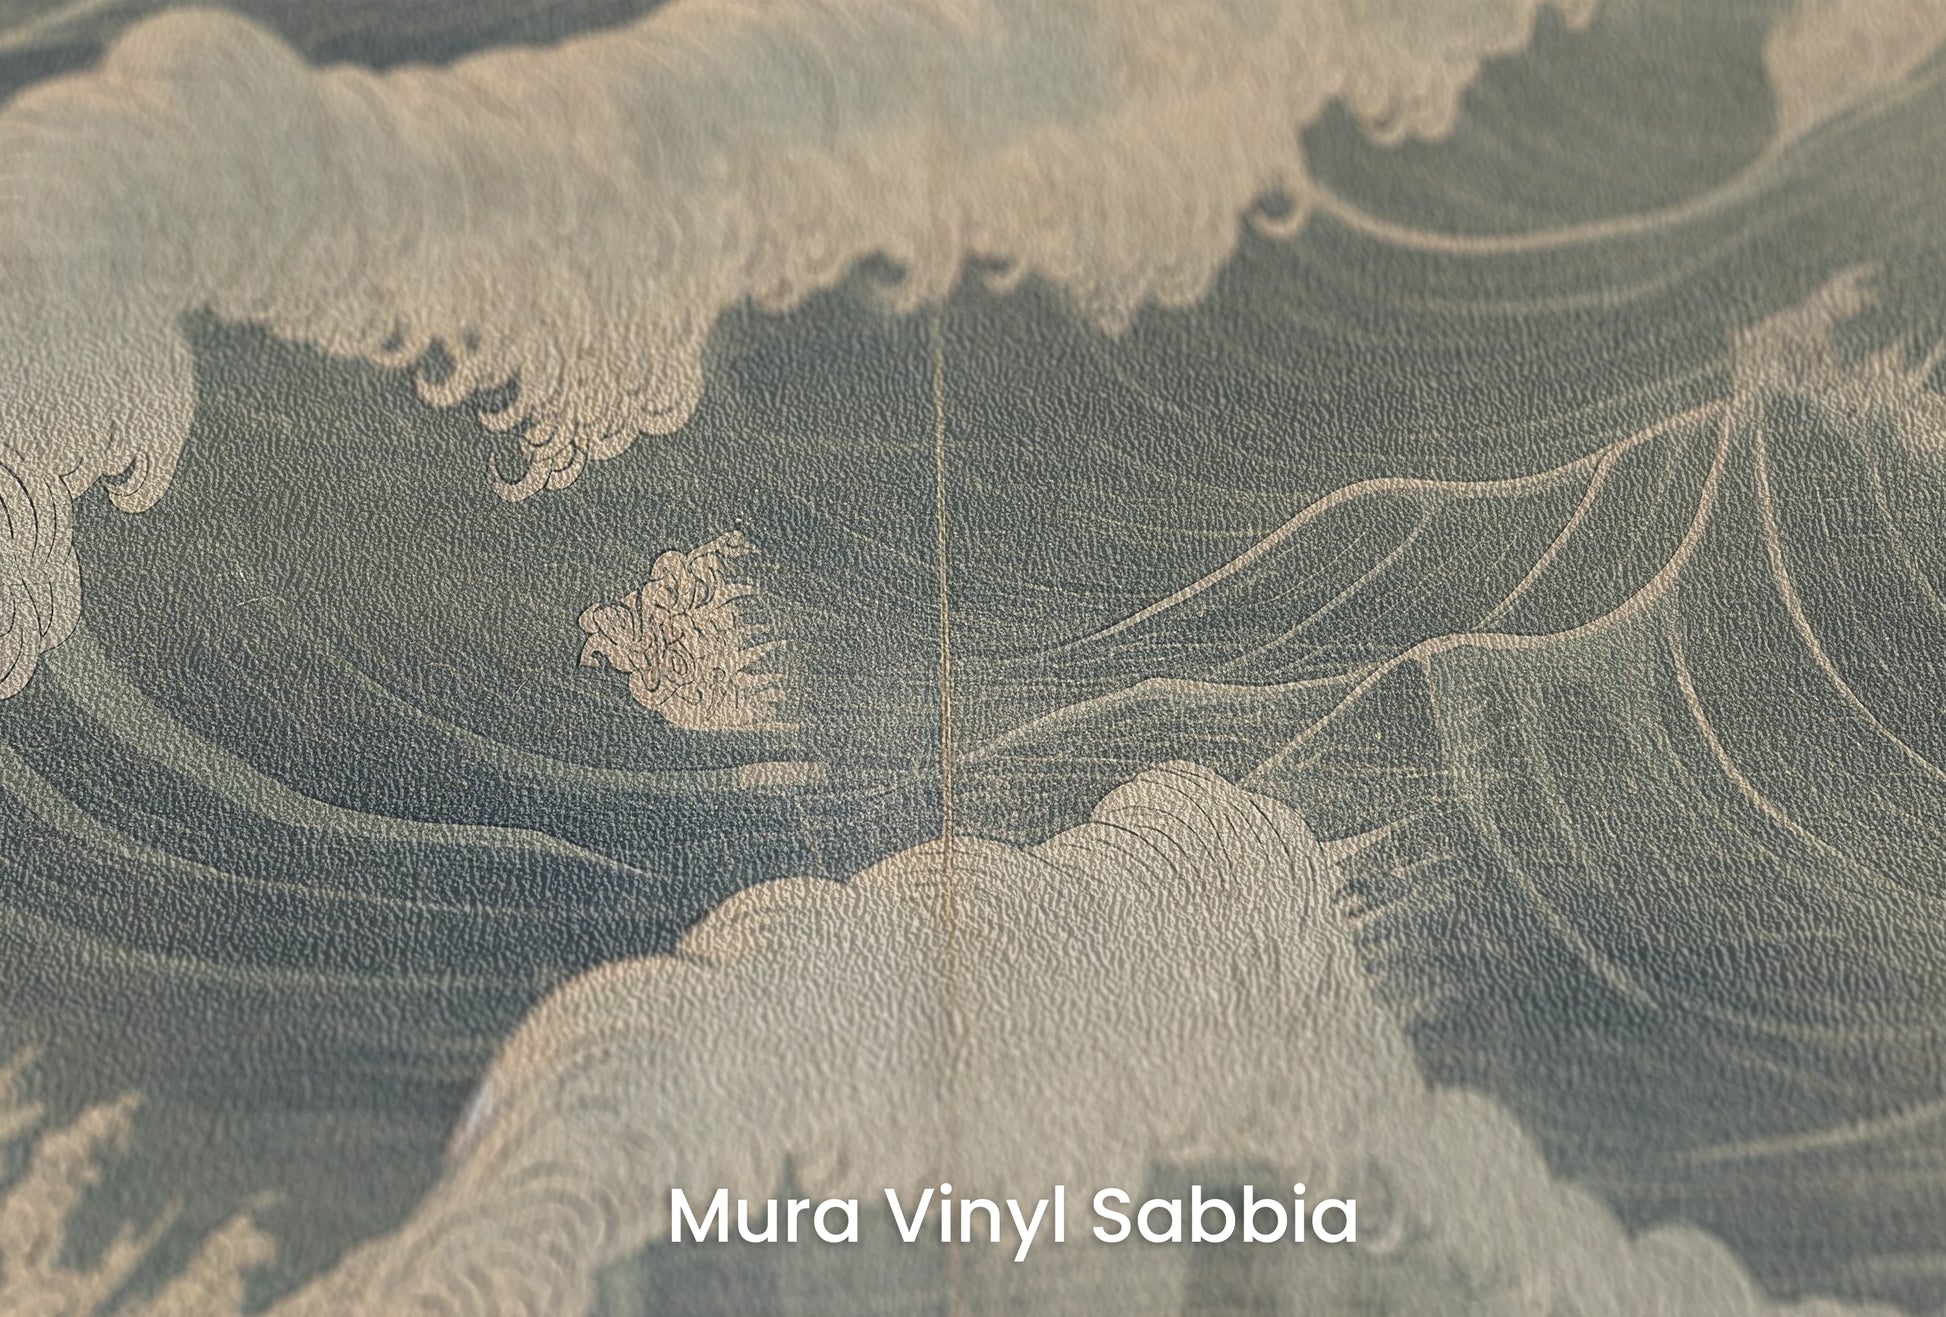 Zbliżenie na artystyczną fototapetę o nazwie Nocturnal Waves na podłożu Mura Vinyl Sabbia struktura grubego ziarna piasku.